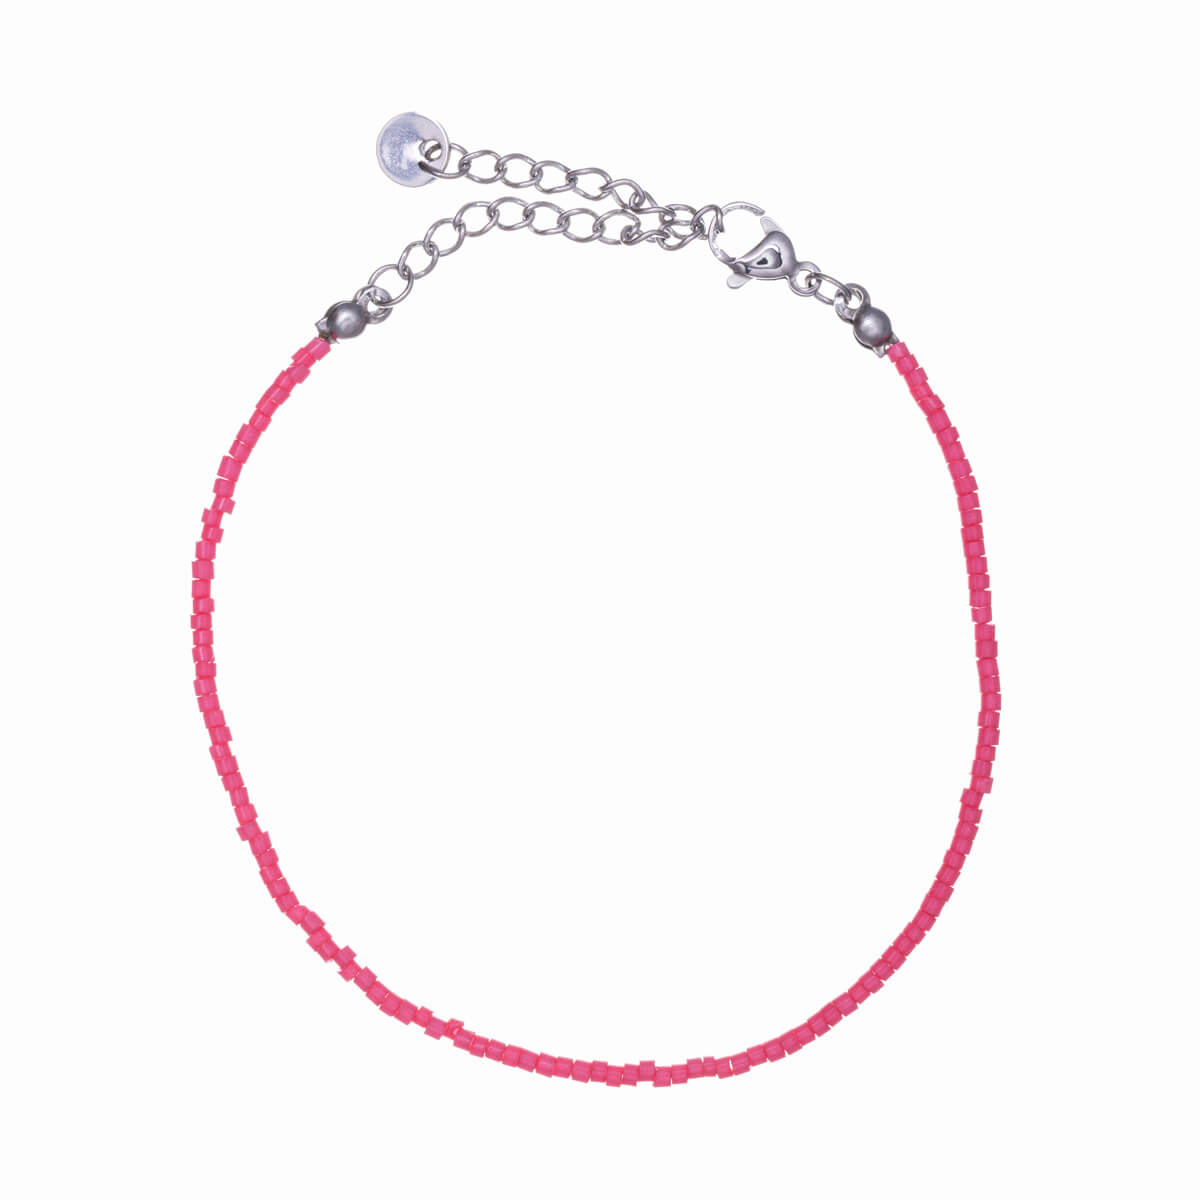 Minimalist bead bracelet (Steel 316L)